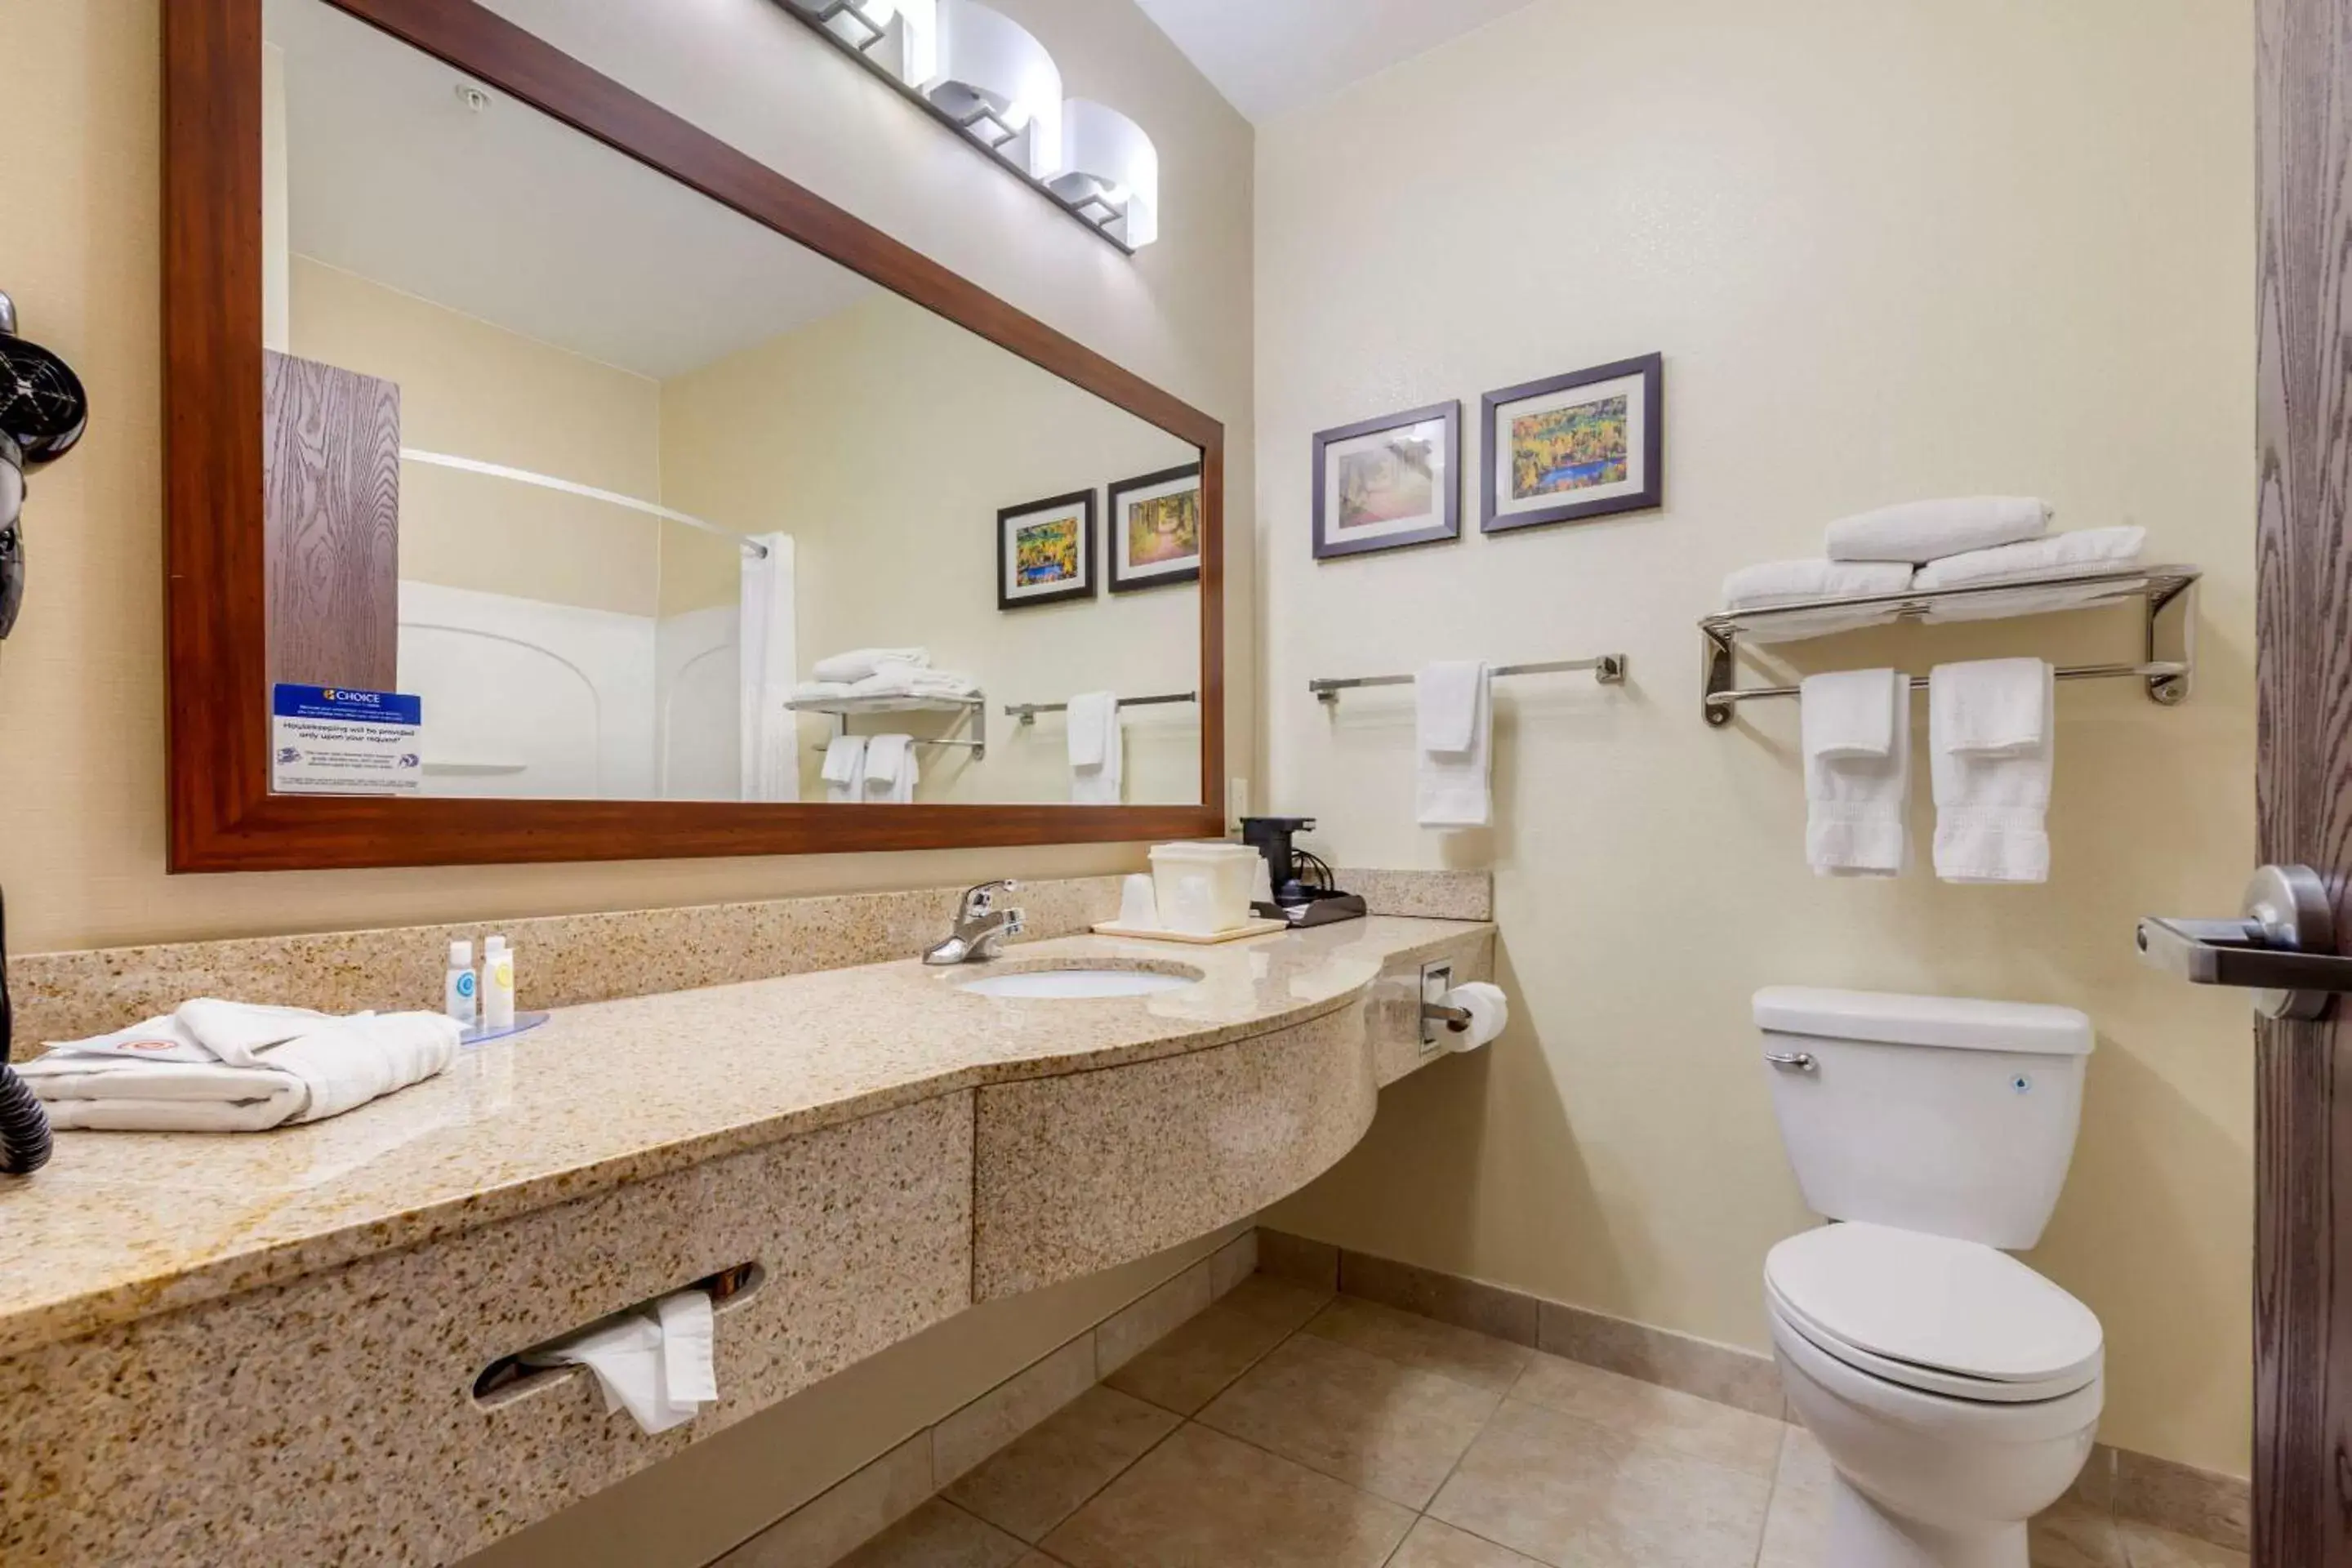 Bedroom, Bathroom in Comfort Inn Plover-Stevens Point